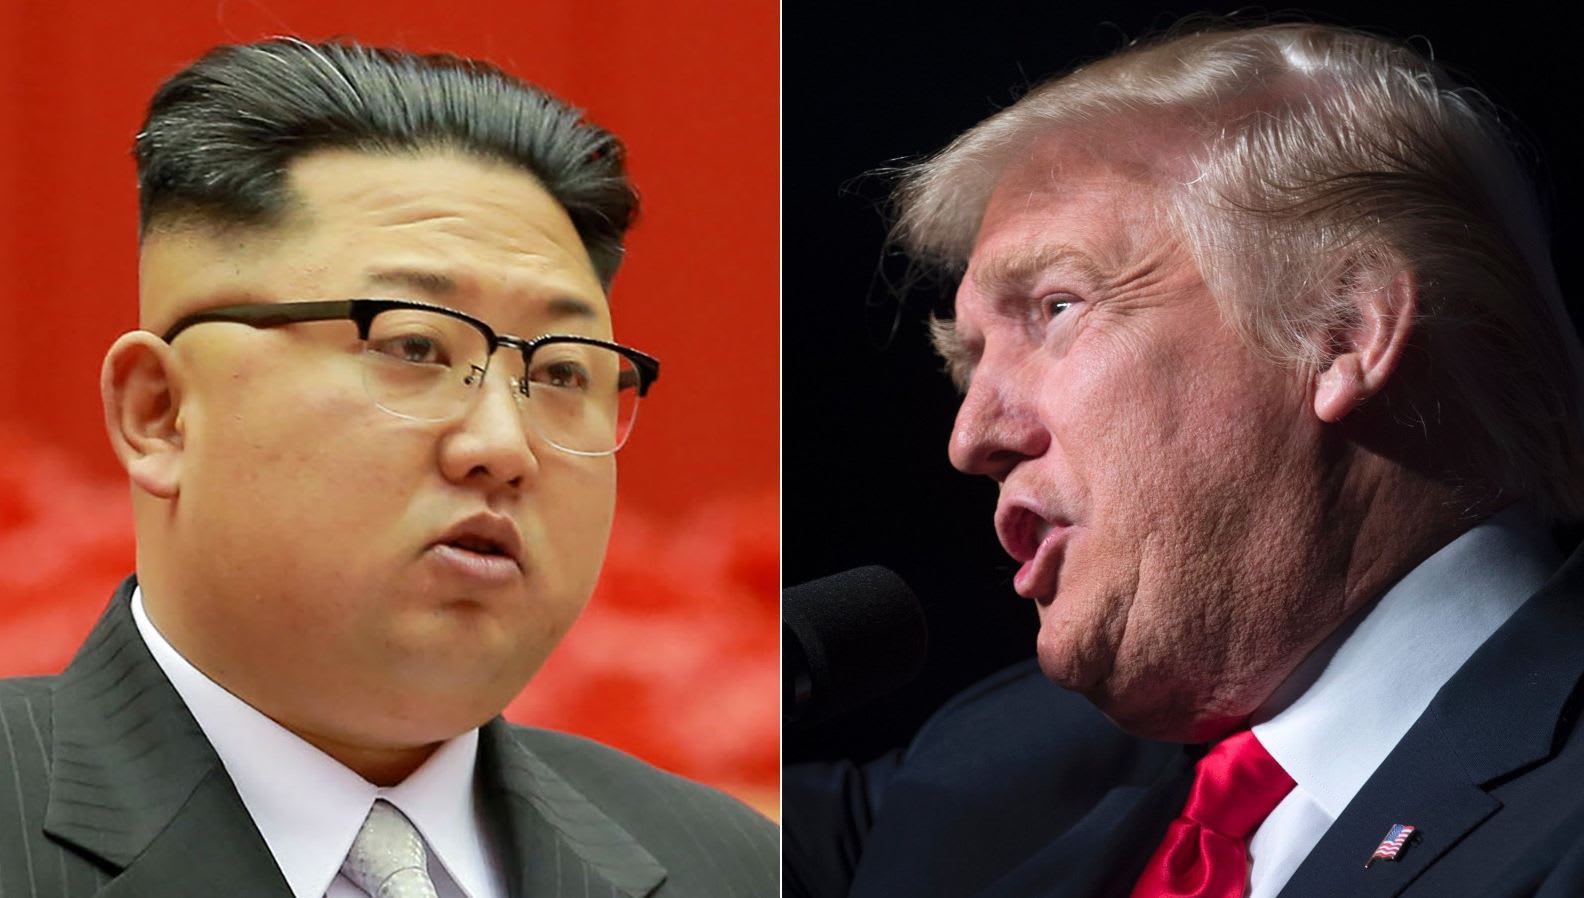 كوريا الشمالية تهدد باختبار قنبلة هيدورجينية.. ورئيسها: ترامب "المختل" سيدفع الثمن